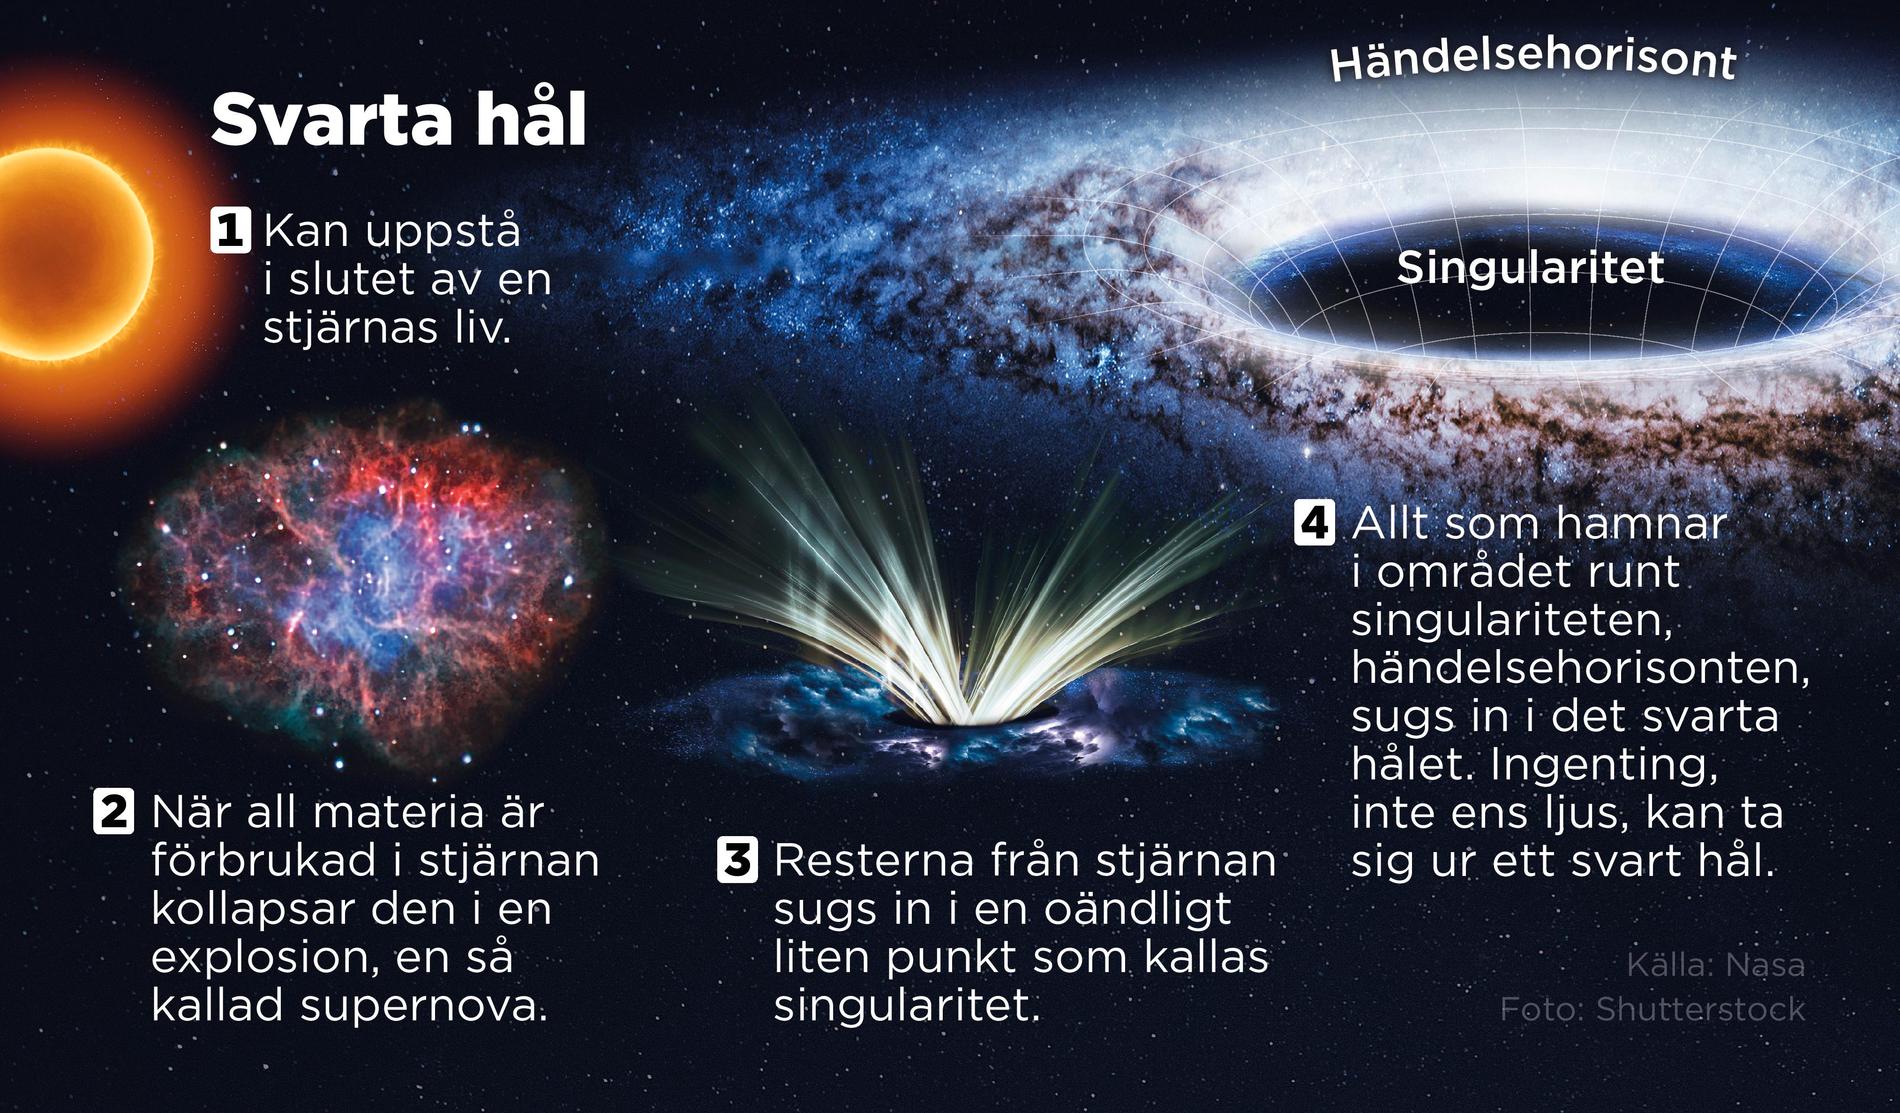 Svarta hål kan uppstå efter att en stjärna kollapsat och exploderat i en så kallad supernova.